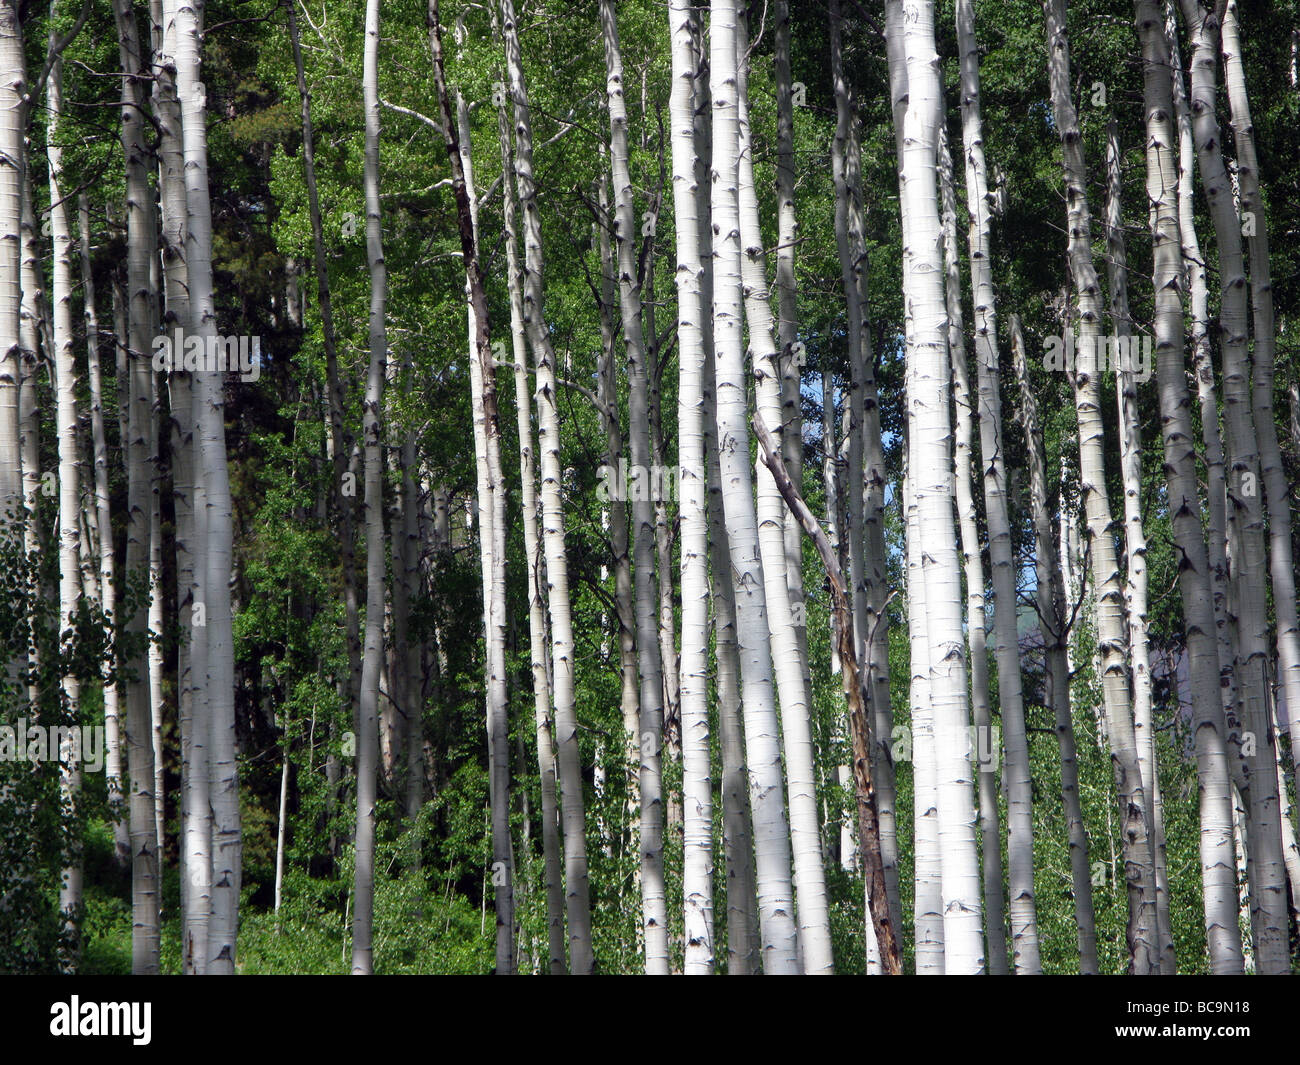 Aspen trees in Colorado mountains, USA Stock Photo